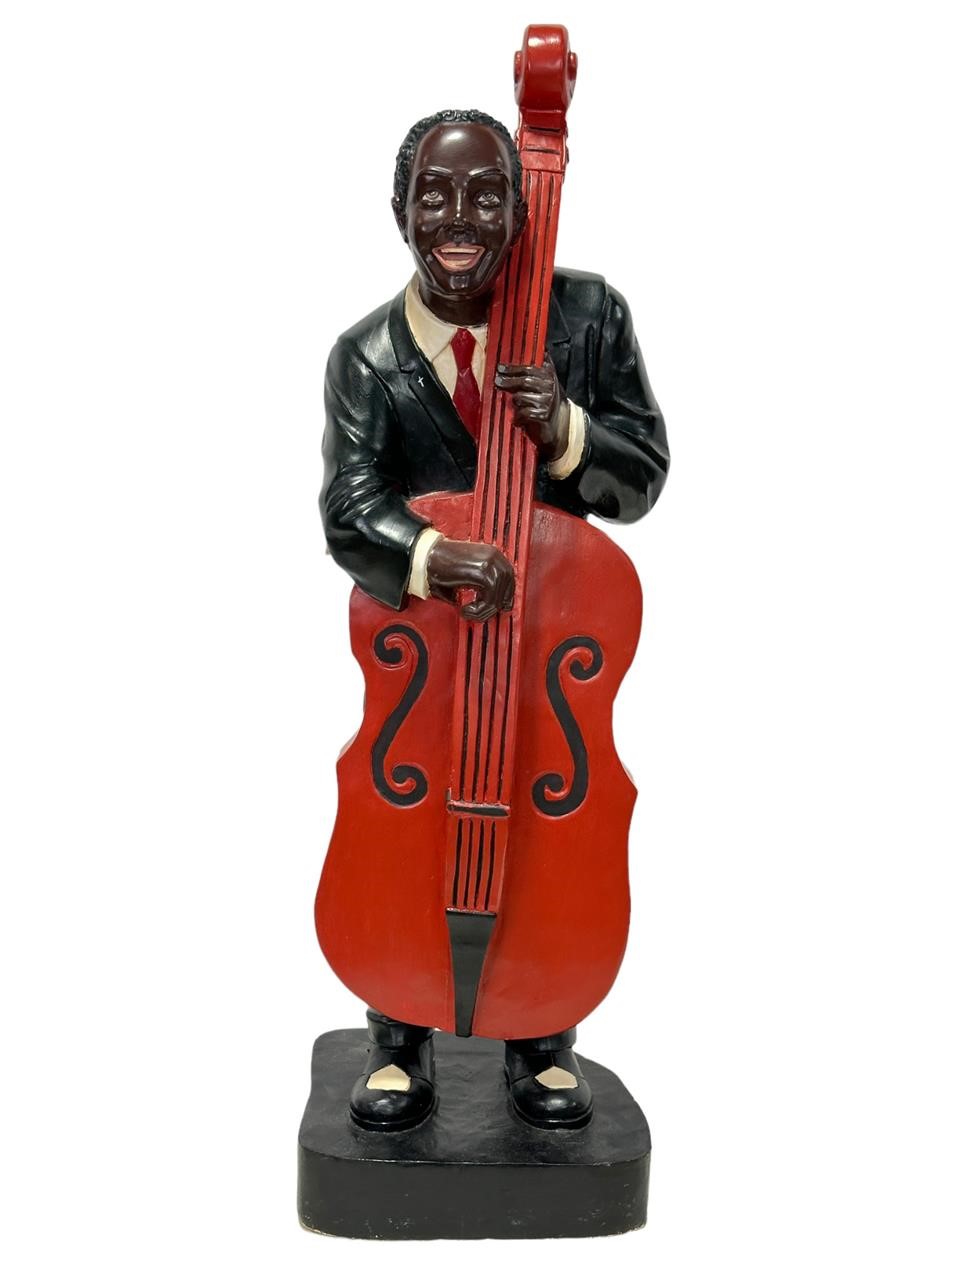 Composite Black Musician Figure